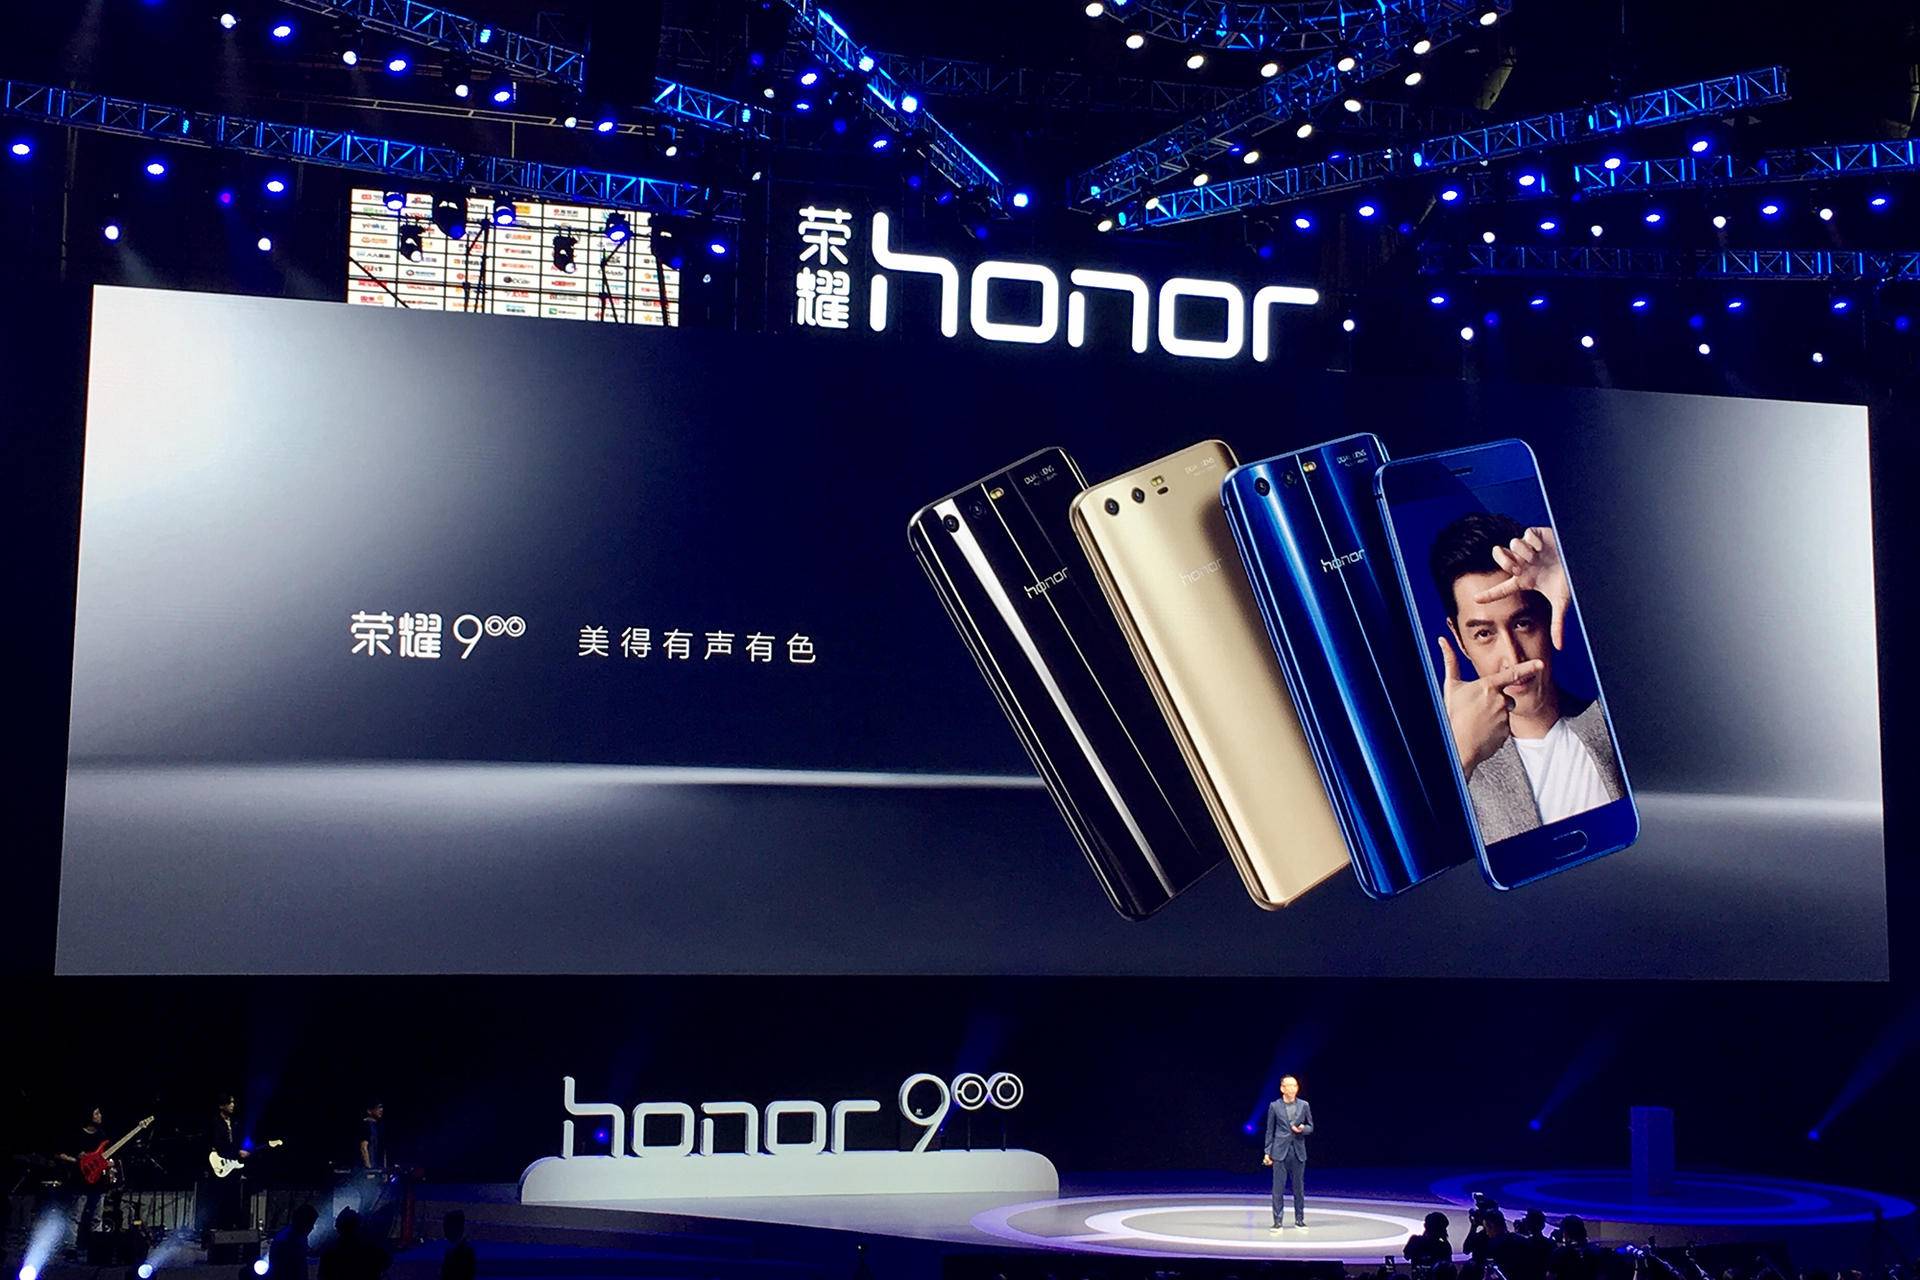 6月12日消息,荣耀今天下午在上海召开发布会,正式推出新品手机荣耀9